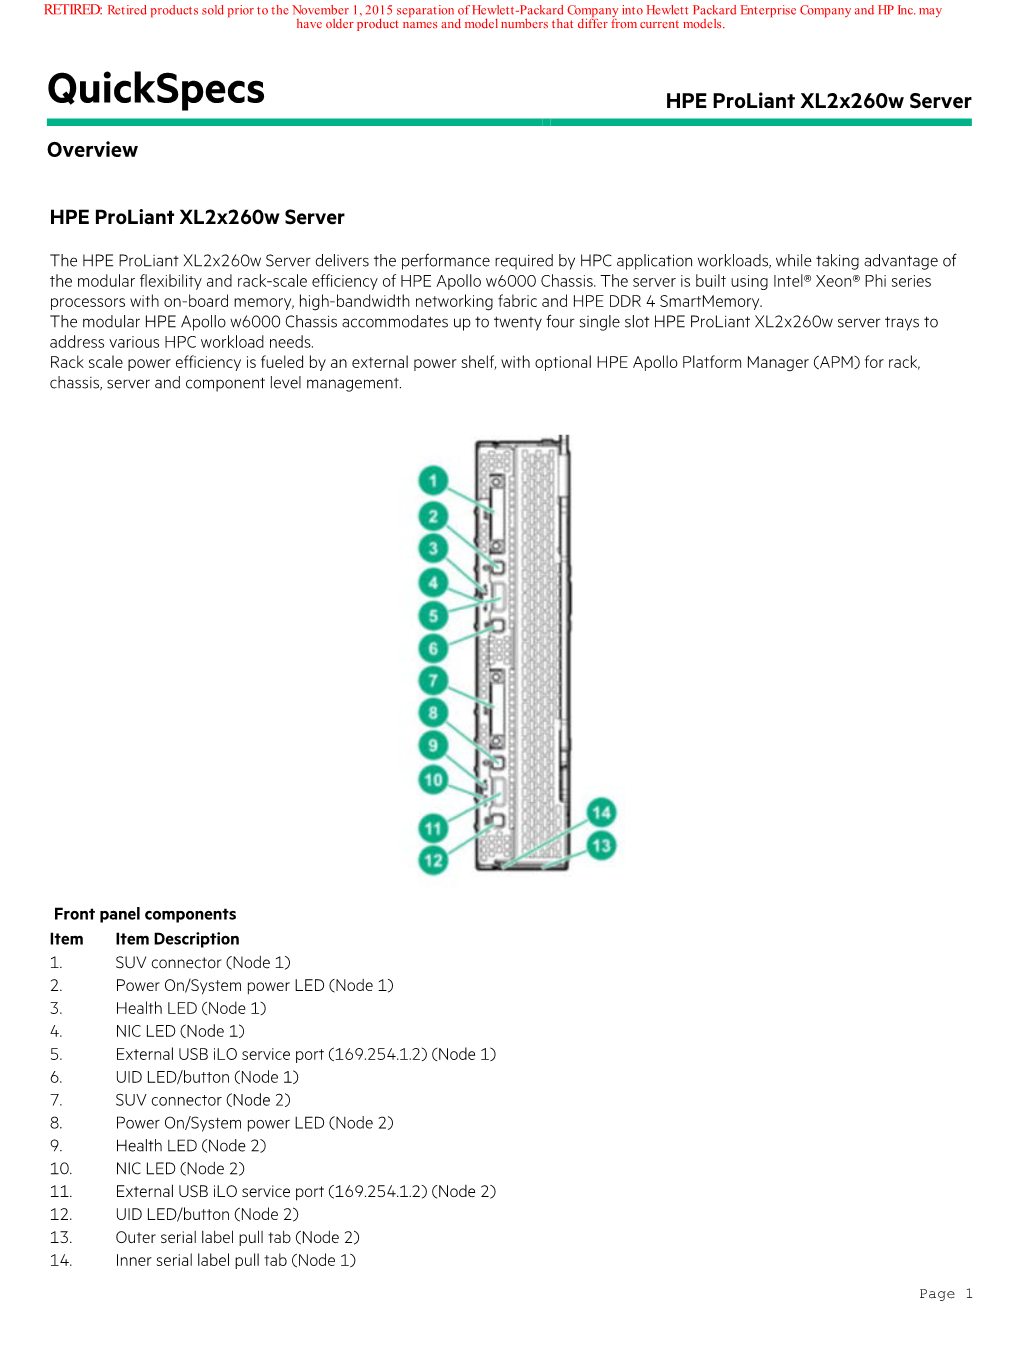 Quickspecs HPE Proliant Xl2x260w Server